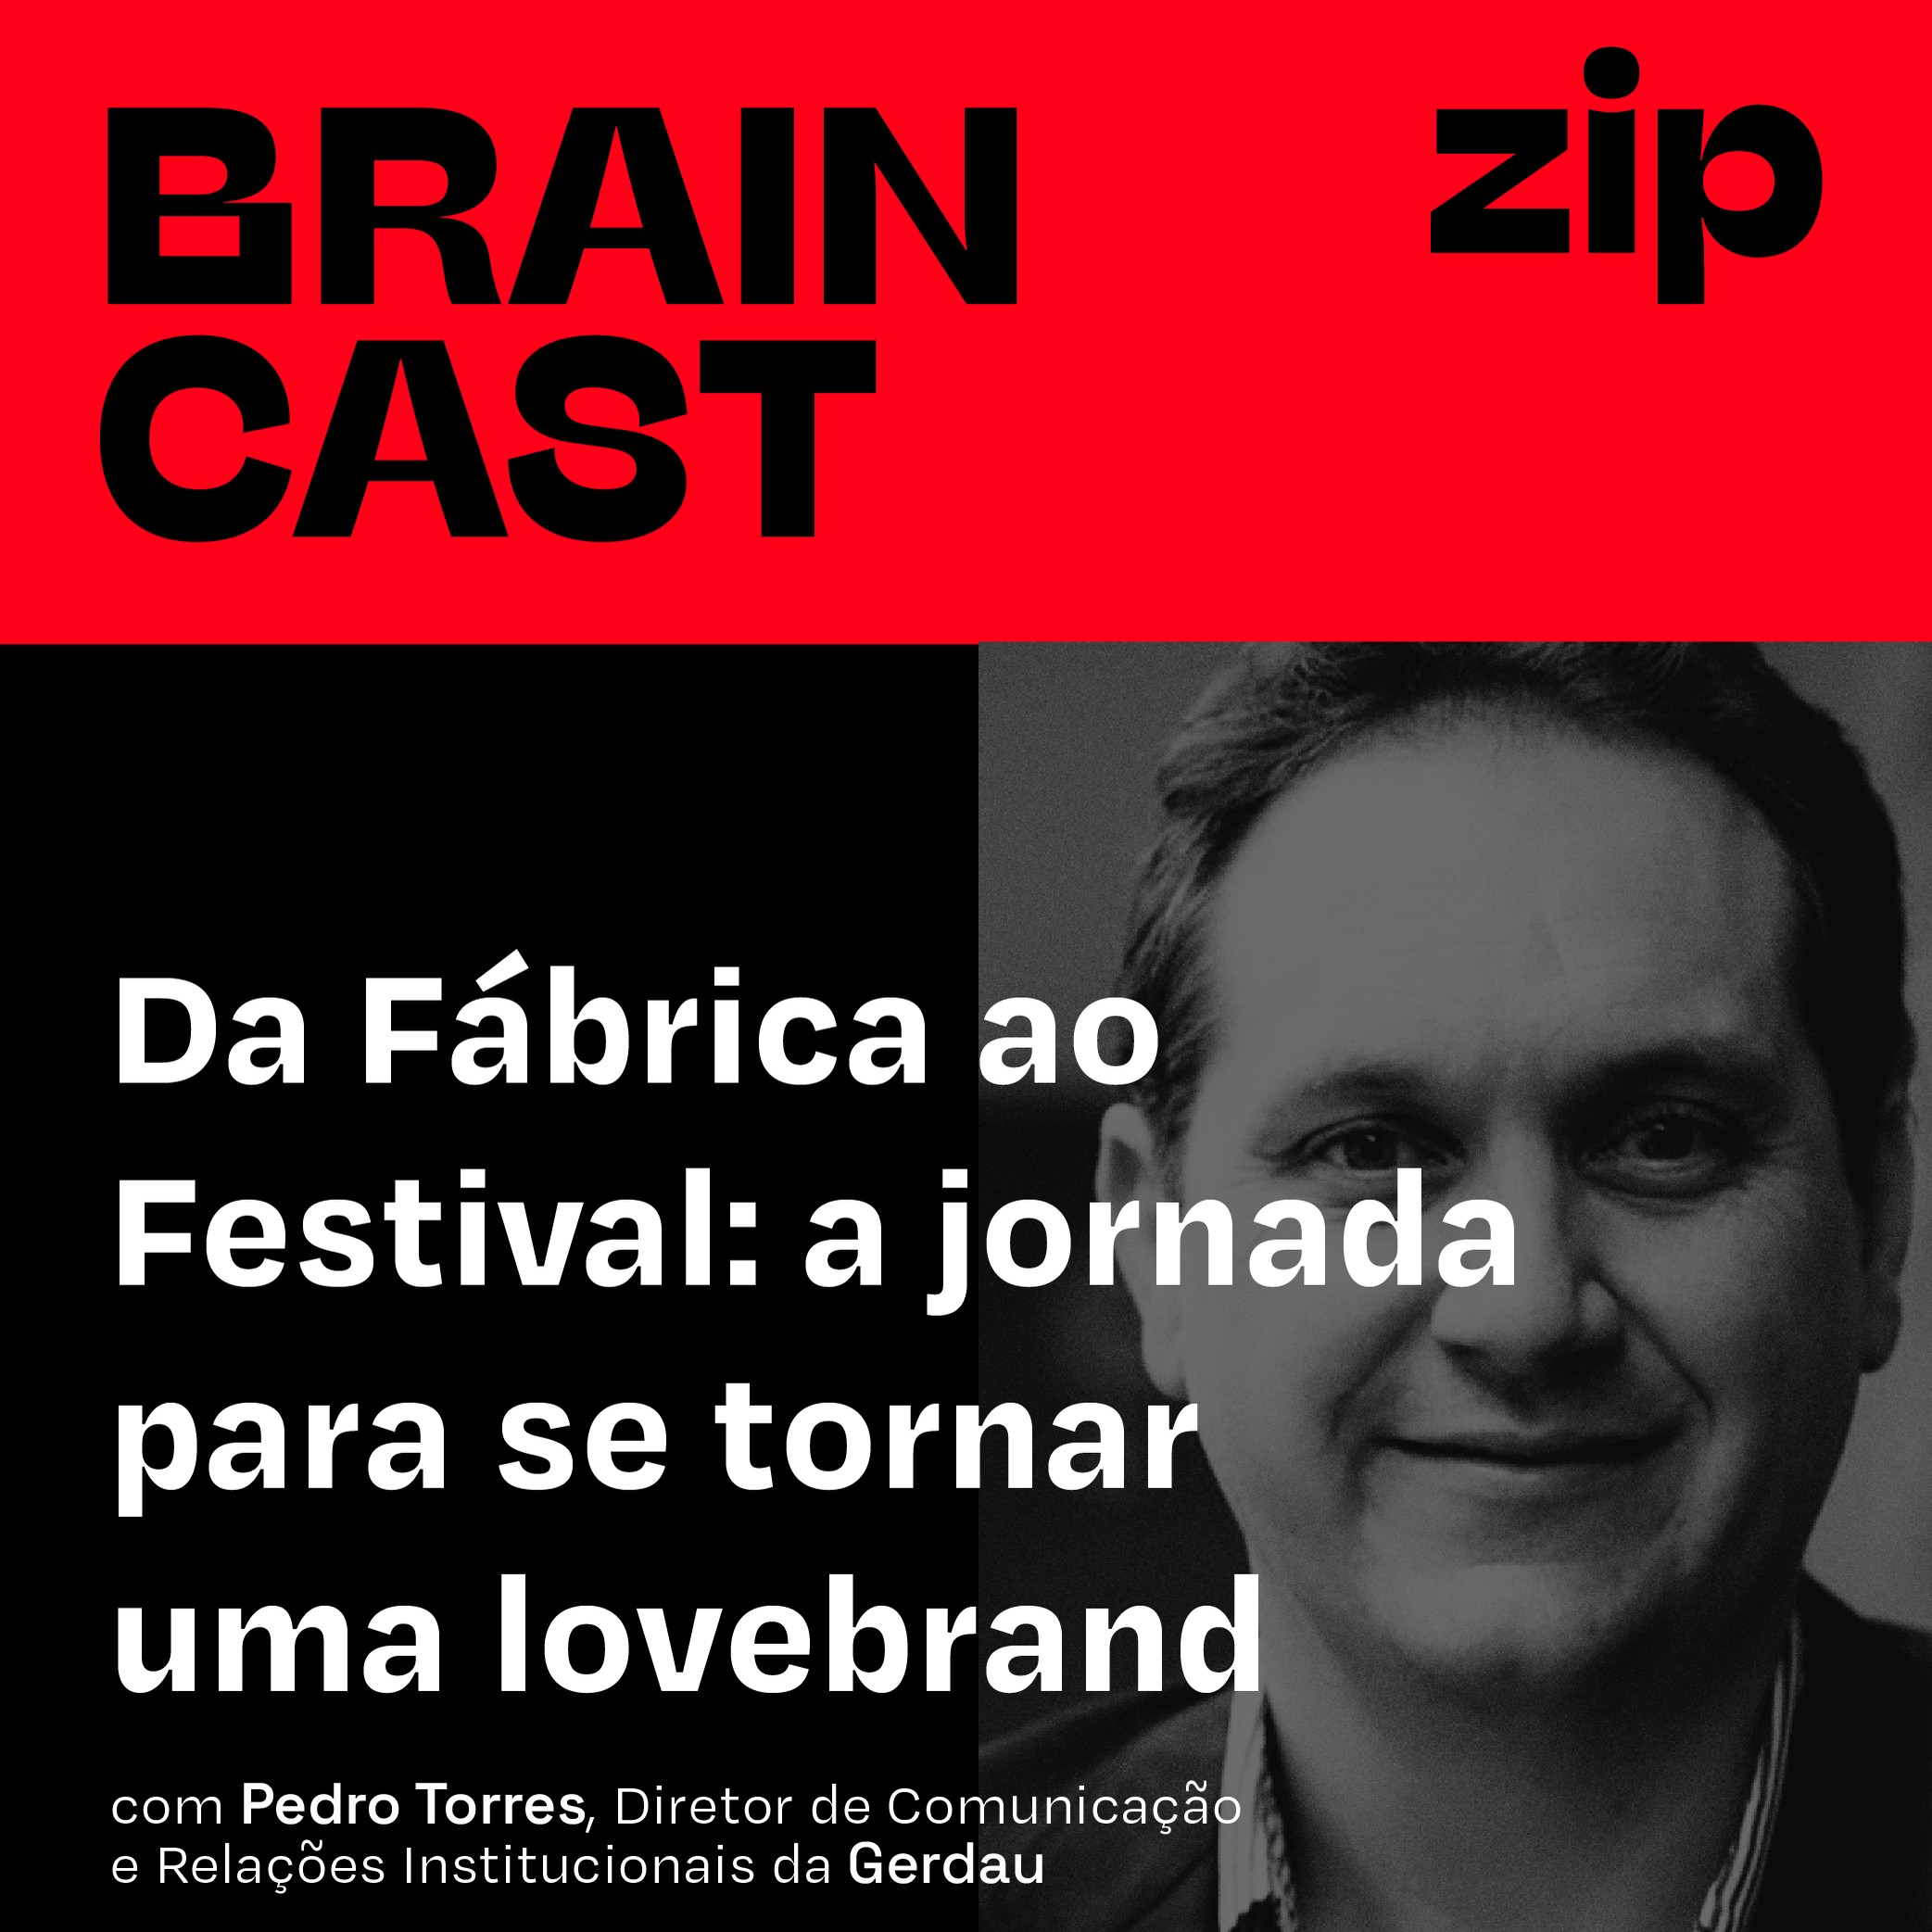 [zip] Da Fábrica ao Festival: a jornada para se tornar uma lovebrand | com Pedro Torres, Diretor de Comunicação e Relações Institucionais da Gerdau